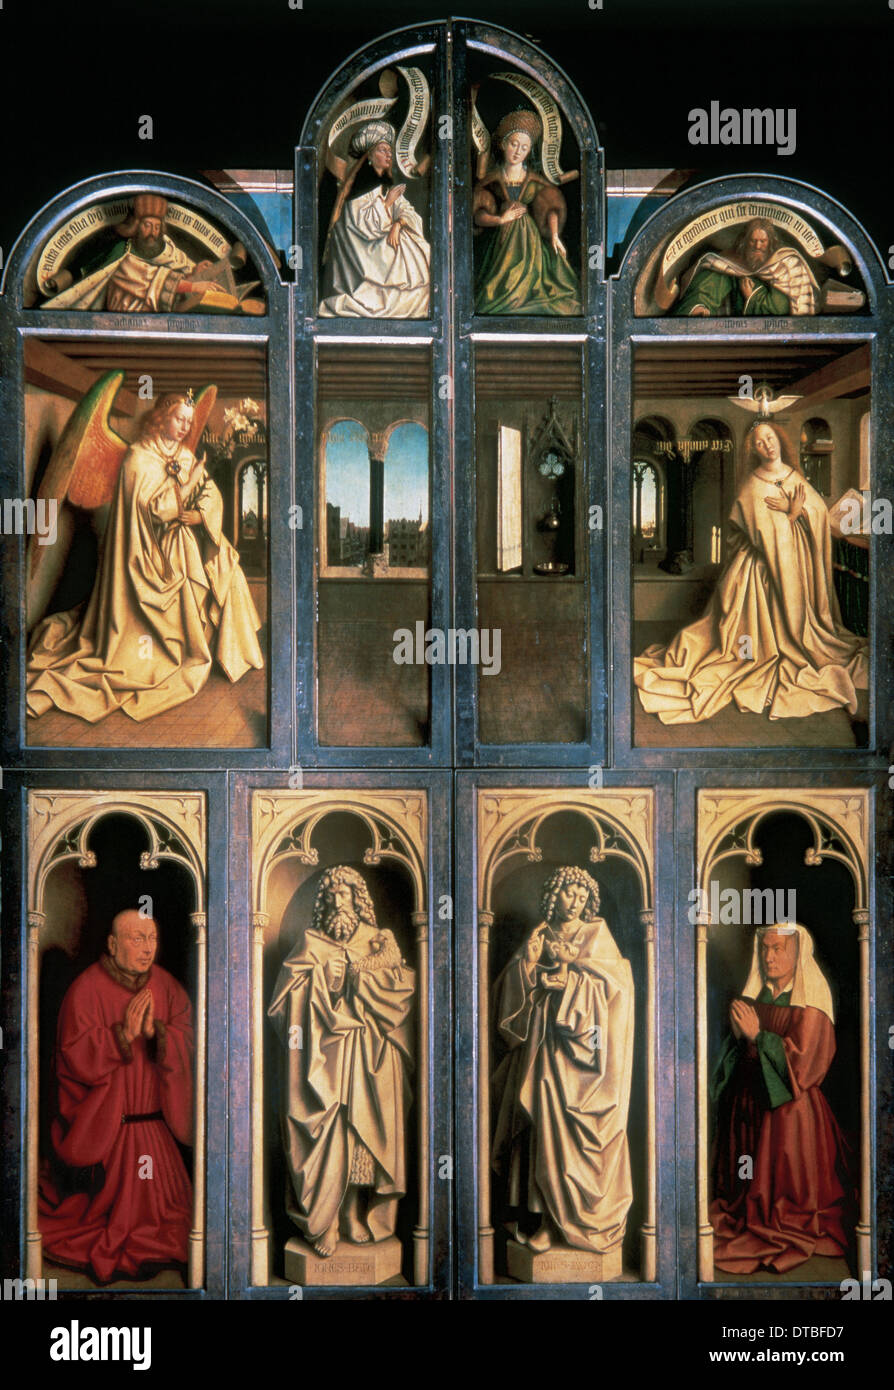 Arte Gotica. L adorazione dell'Agnello mistico di Jan van Eyck (c.1390-c.1441), 1430-32. Profeti e Sibille, Annunciazione, santi. Foto Stock